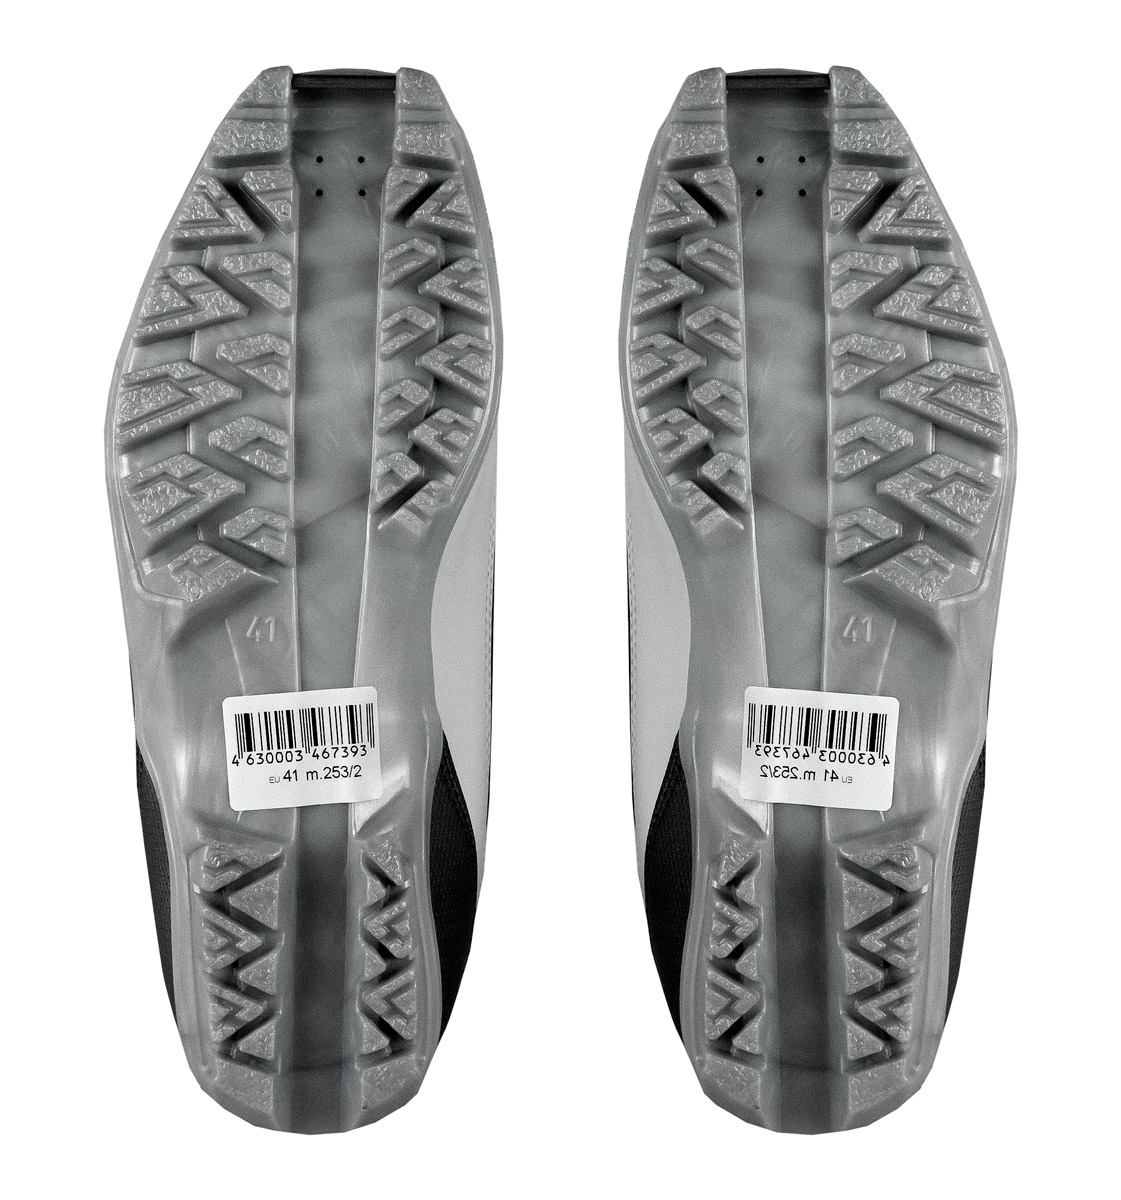 Лыжные ботинки SPINE X-RIDER 253/2 SNS ― купить в Москве. Цена, фото,описание, продажа, отзывы. Выбрать, заказать с доставкой.